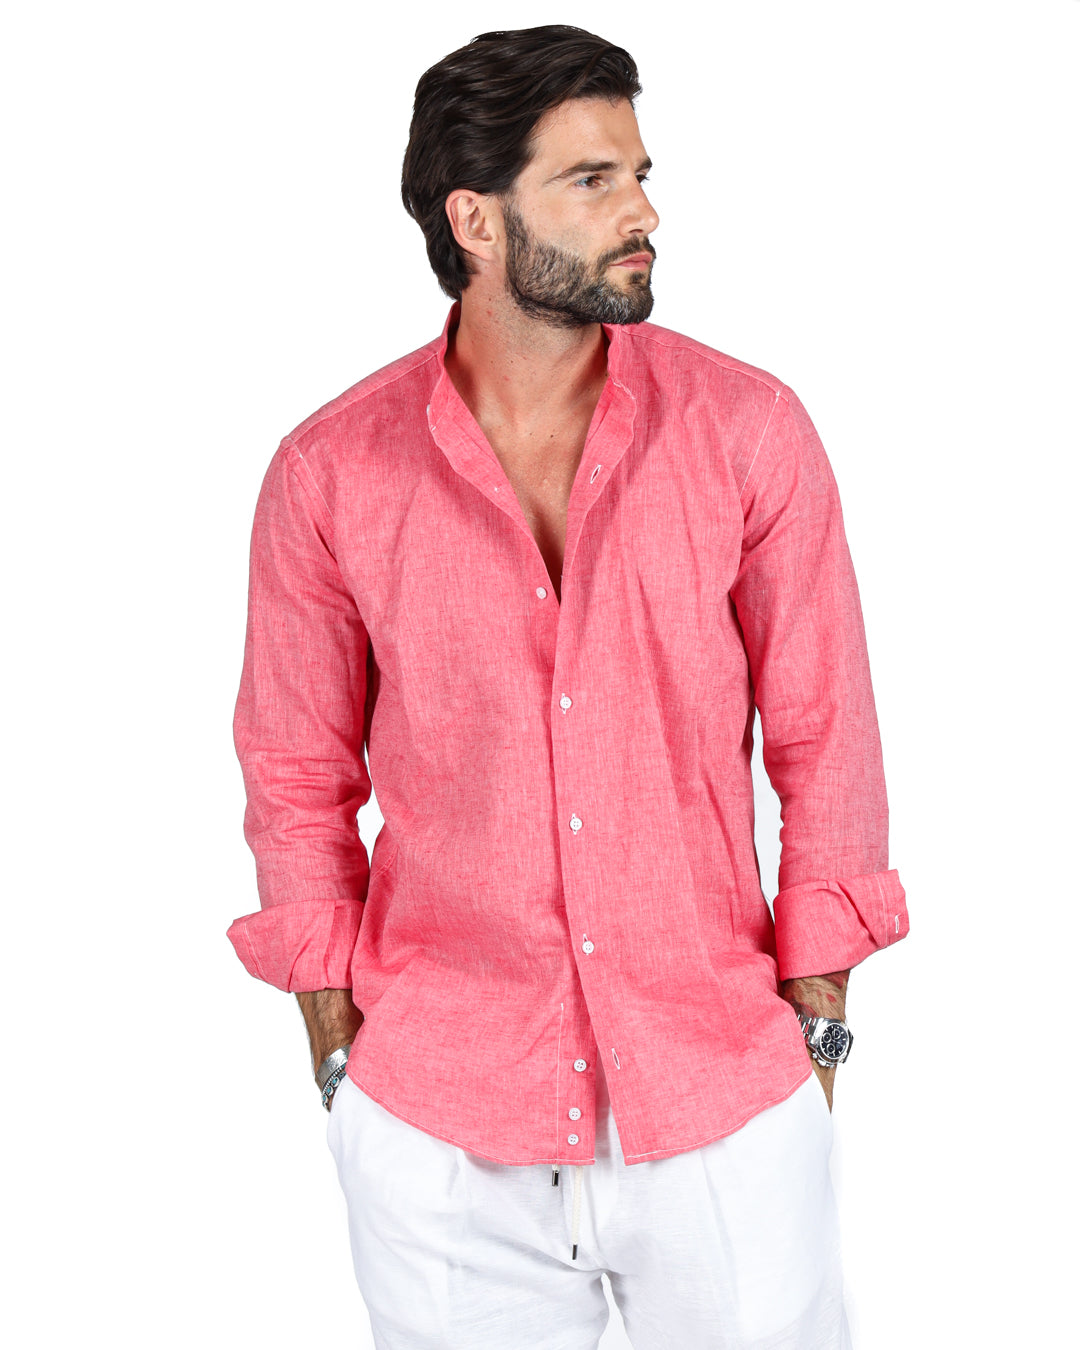 Positano - Coral Korean linen shirt